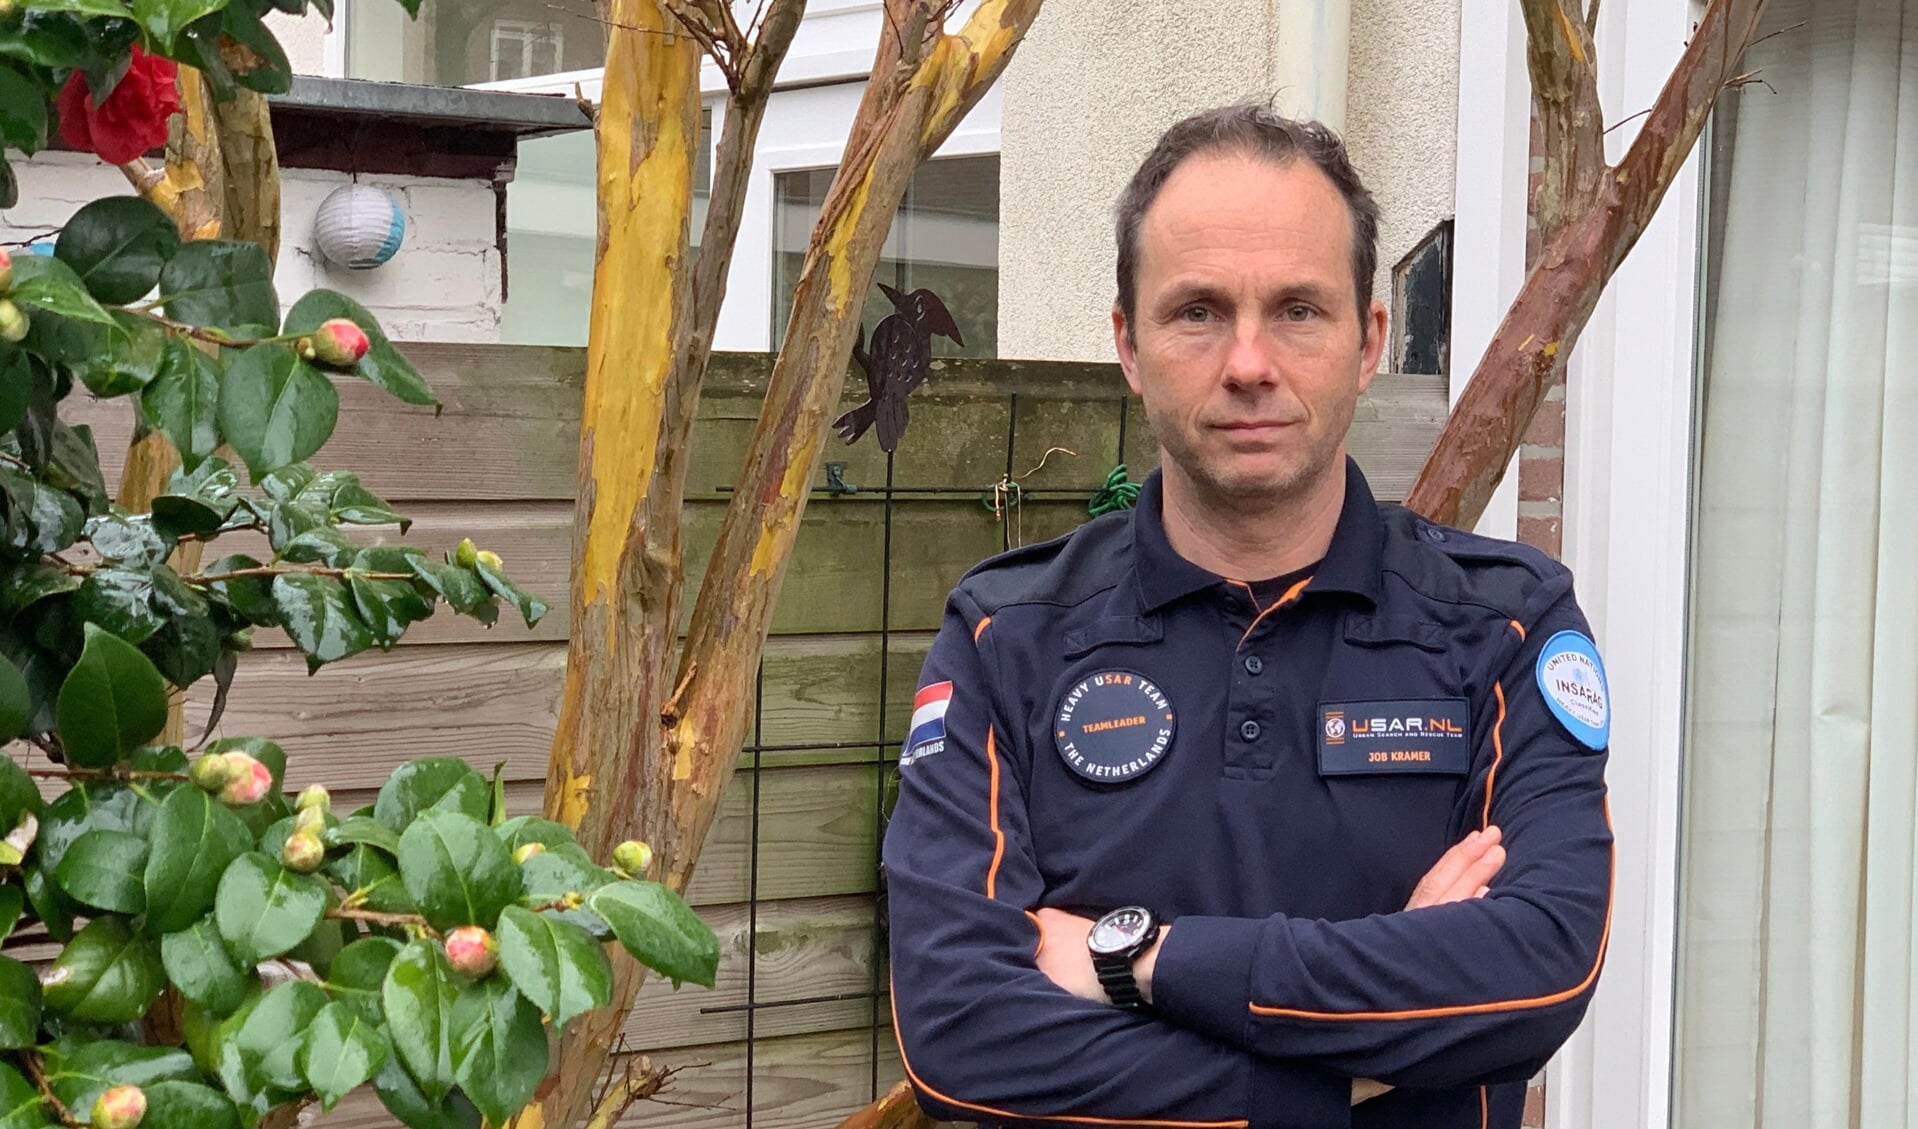 Job Kramer is weer terug in Rijswijk, na met zijn USAR-team 12 mensen te hebben gered in Turkije. Nu pas beseft hij hoe groot de risico's waren. 